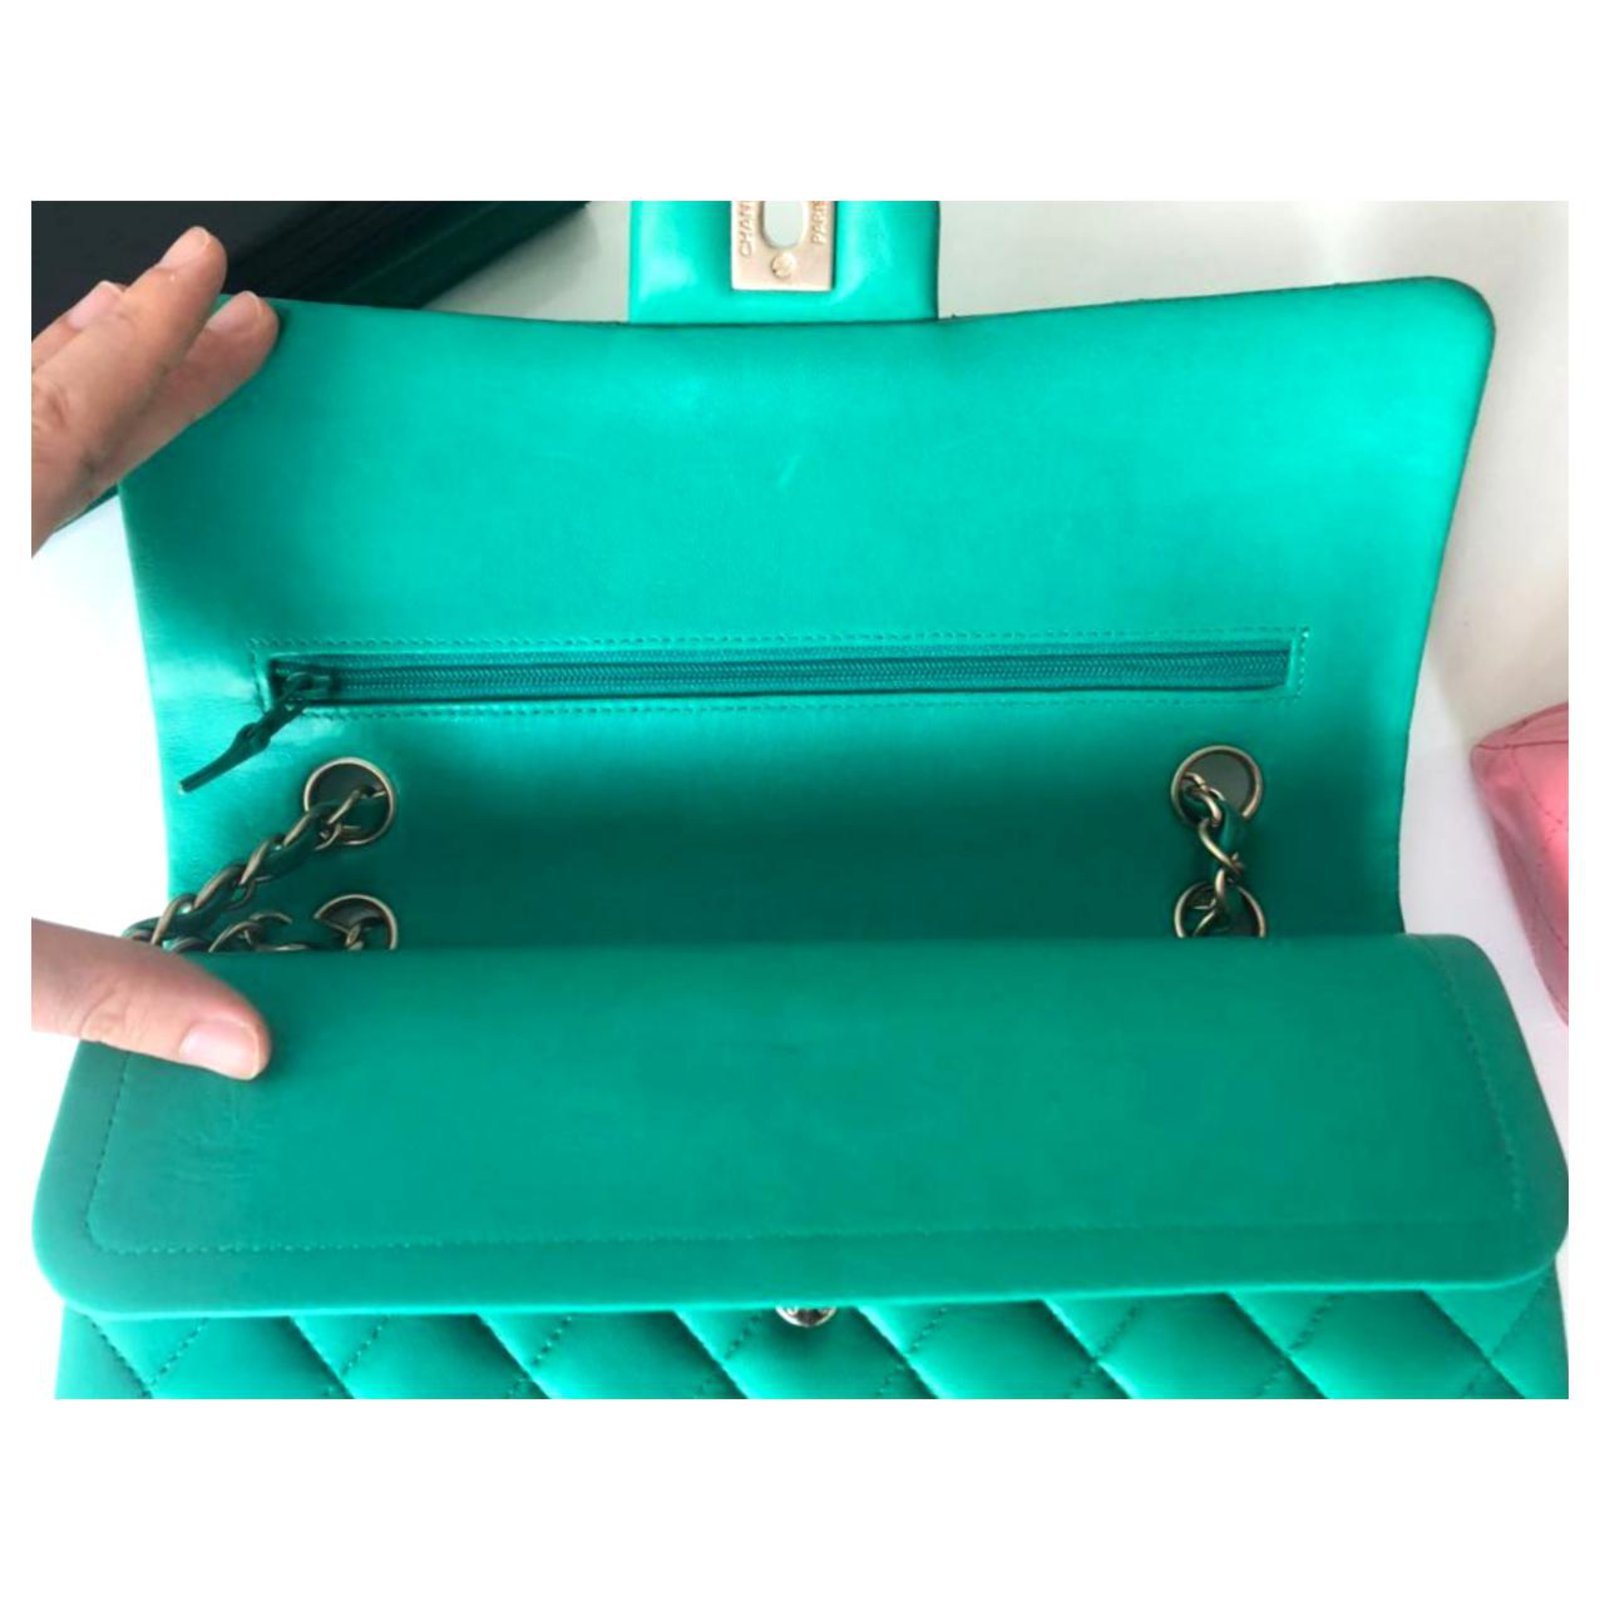 Chanel Medium green classic flap bag GHW